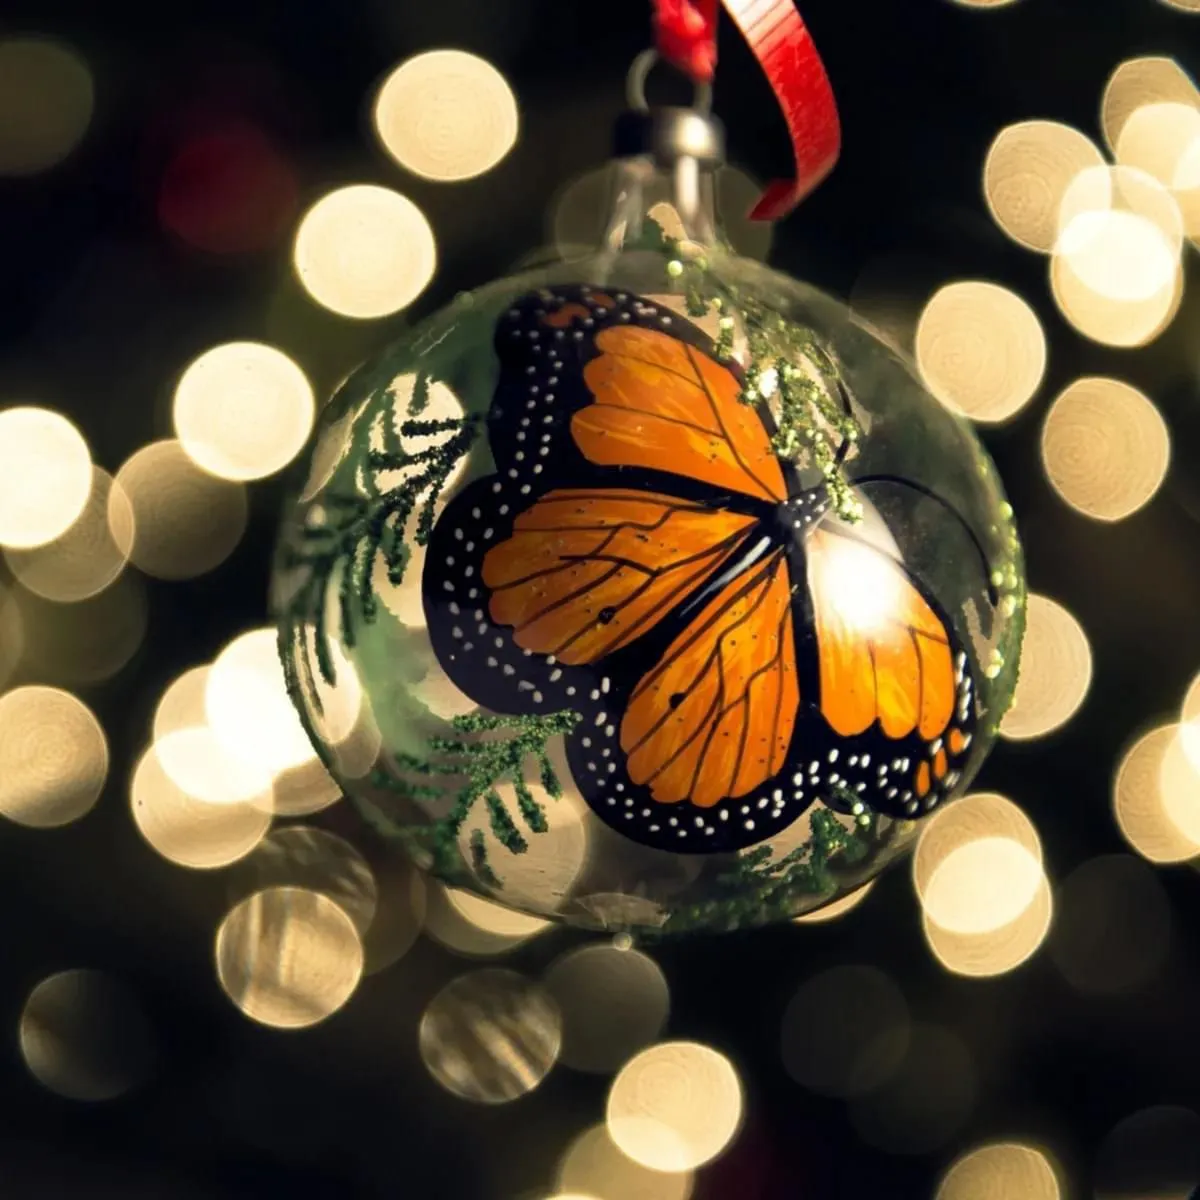 Con producción de árboles y esferas, Michoacán es la estrella de Navidad en México